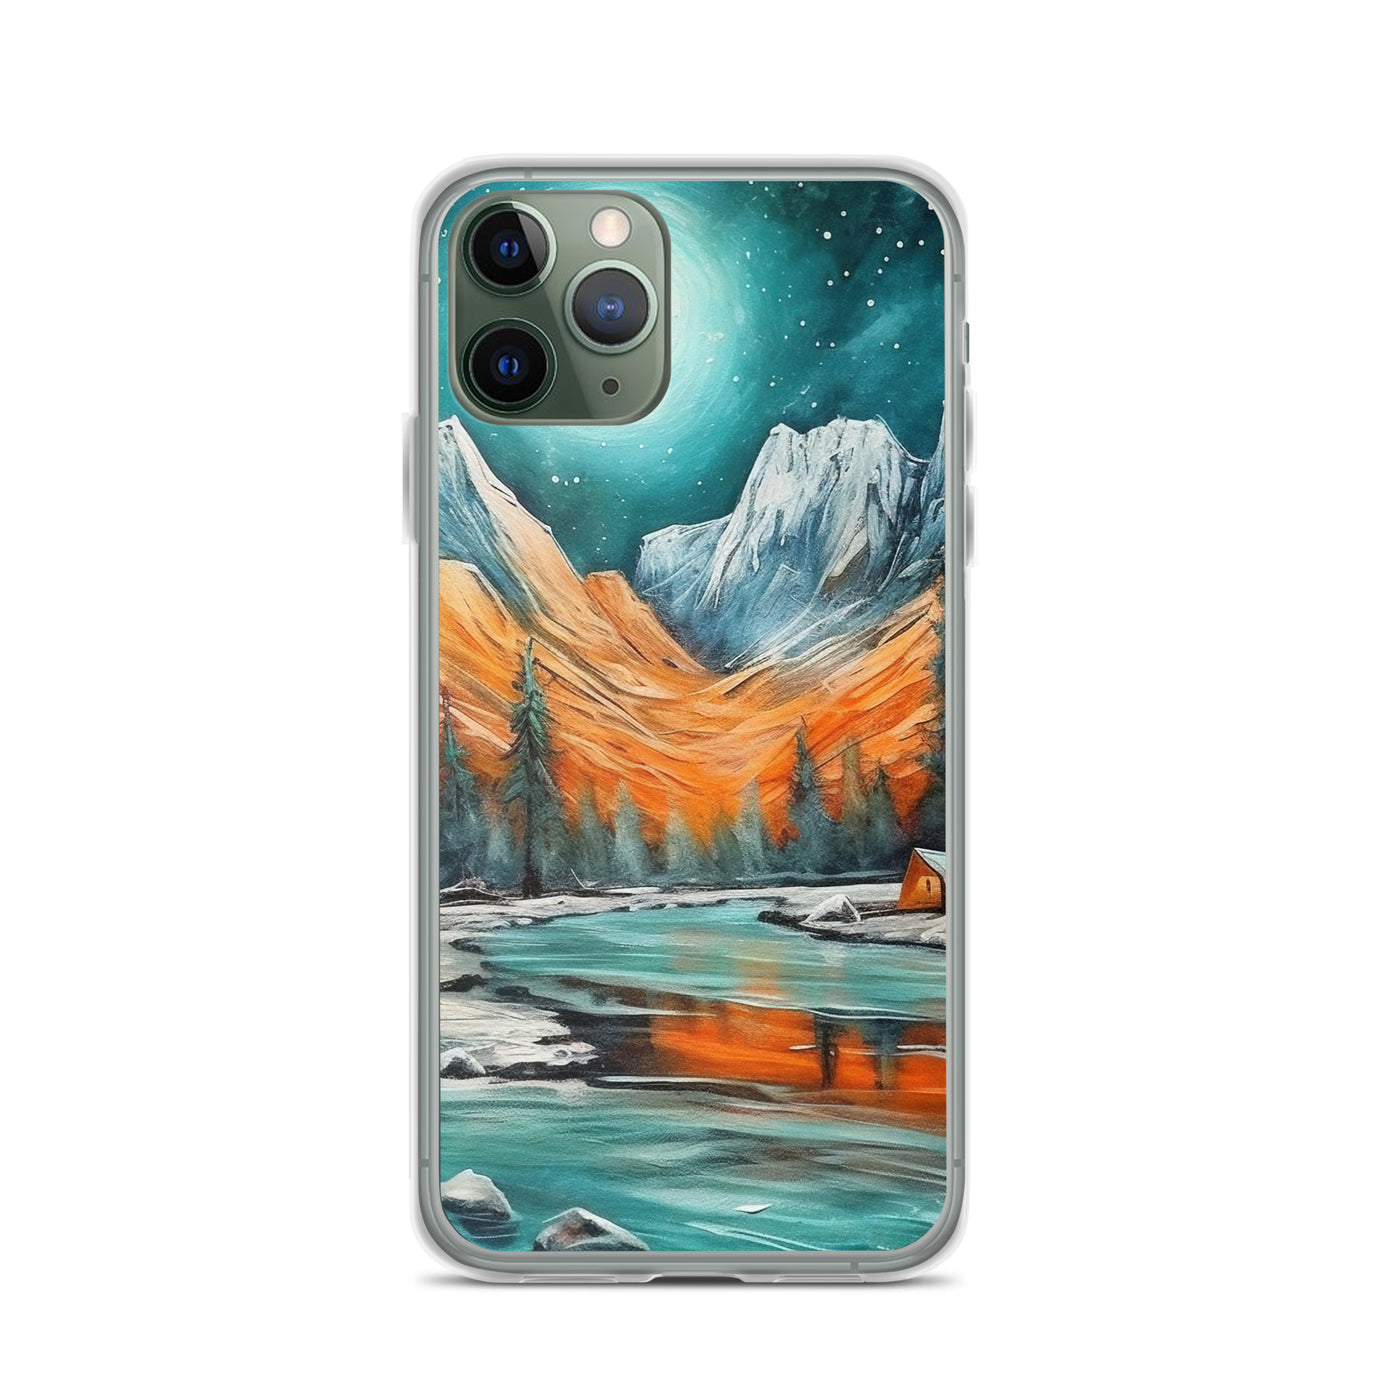 Berglandschaft und Zelte - Nachtstimmung - Landschaftsmalerei - iPhone Schutzhülle (durchsichtig) camping xxx iPhone 11 Pro